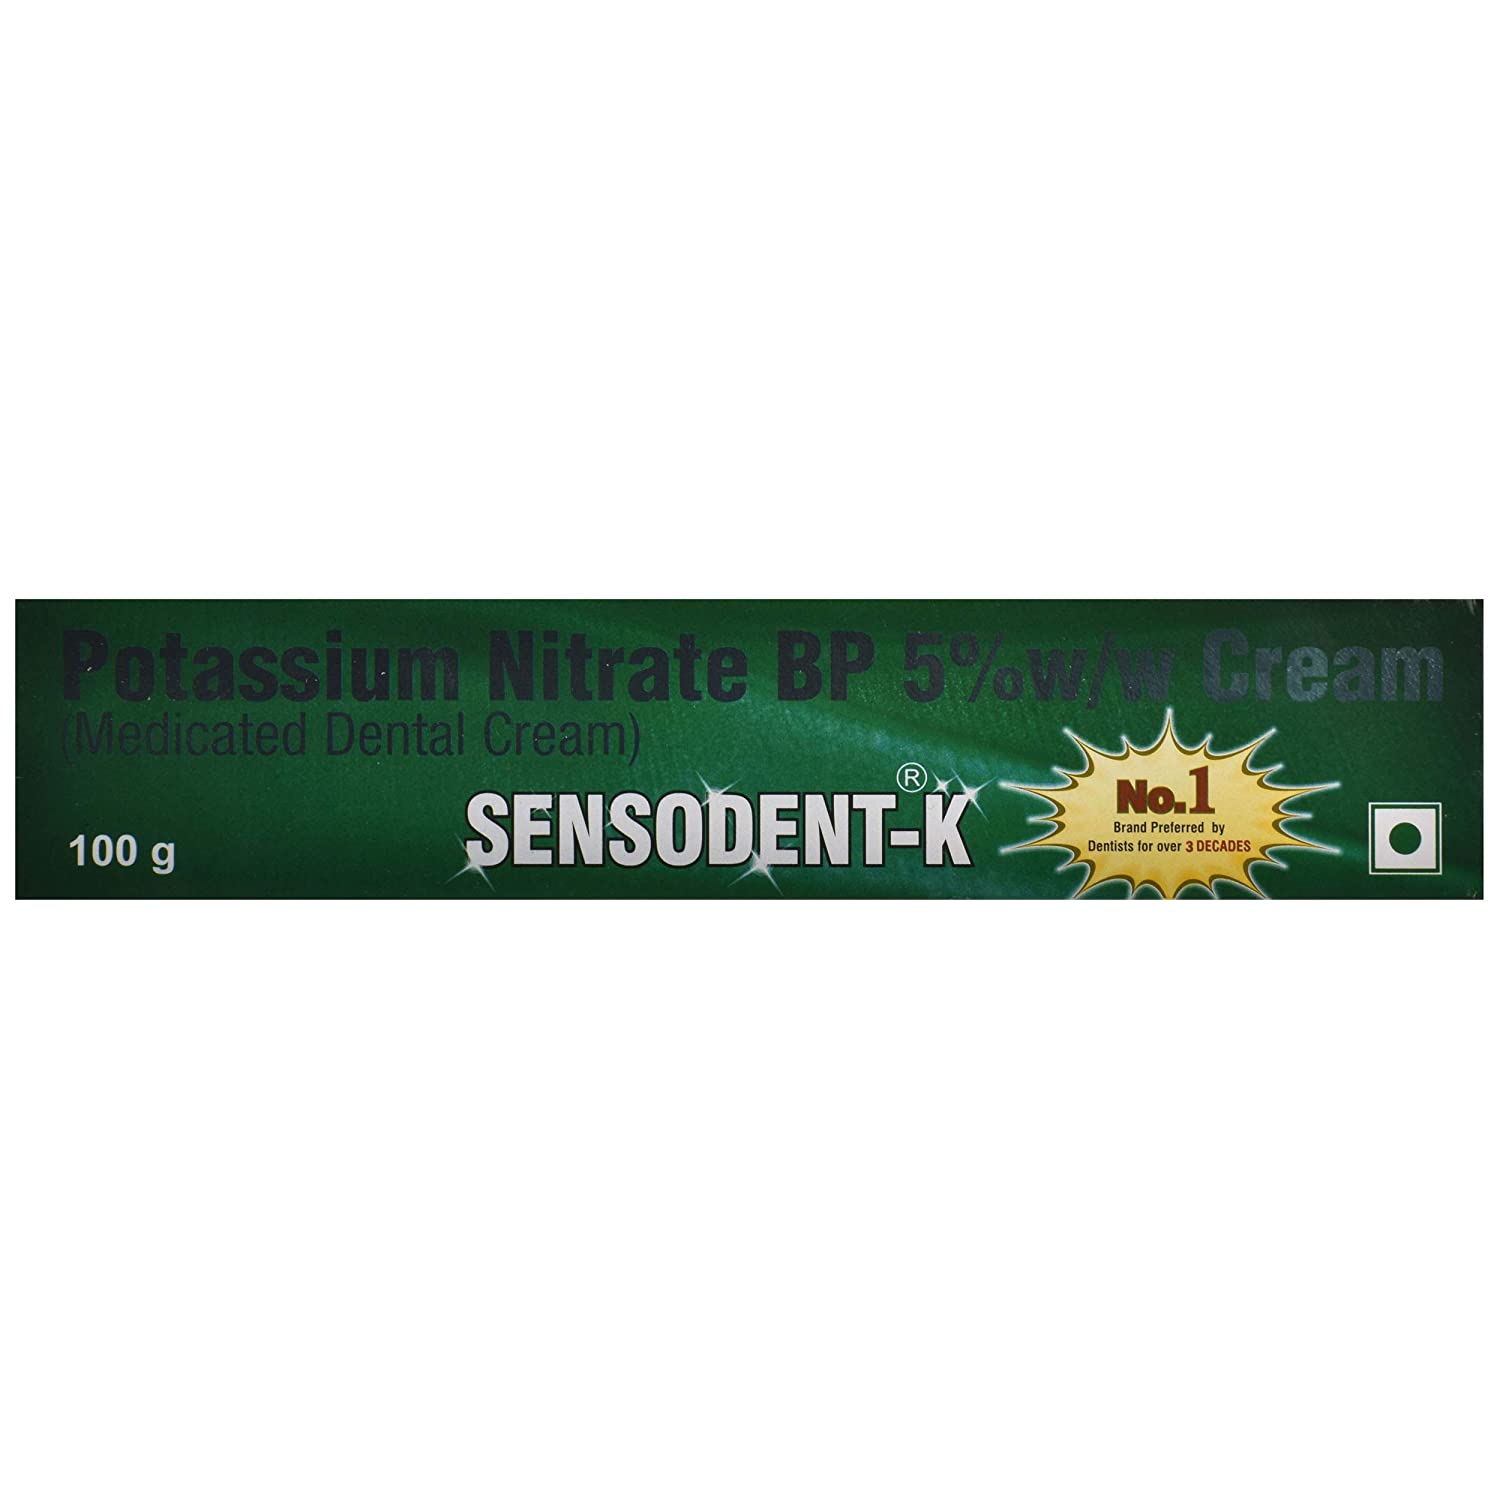 SENSODENT-K Medicated dental cream Indoco remedies ltd. (СЕНСОДЕНТ - К, Медицинский стоматологический крем), 100 г.